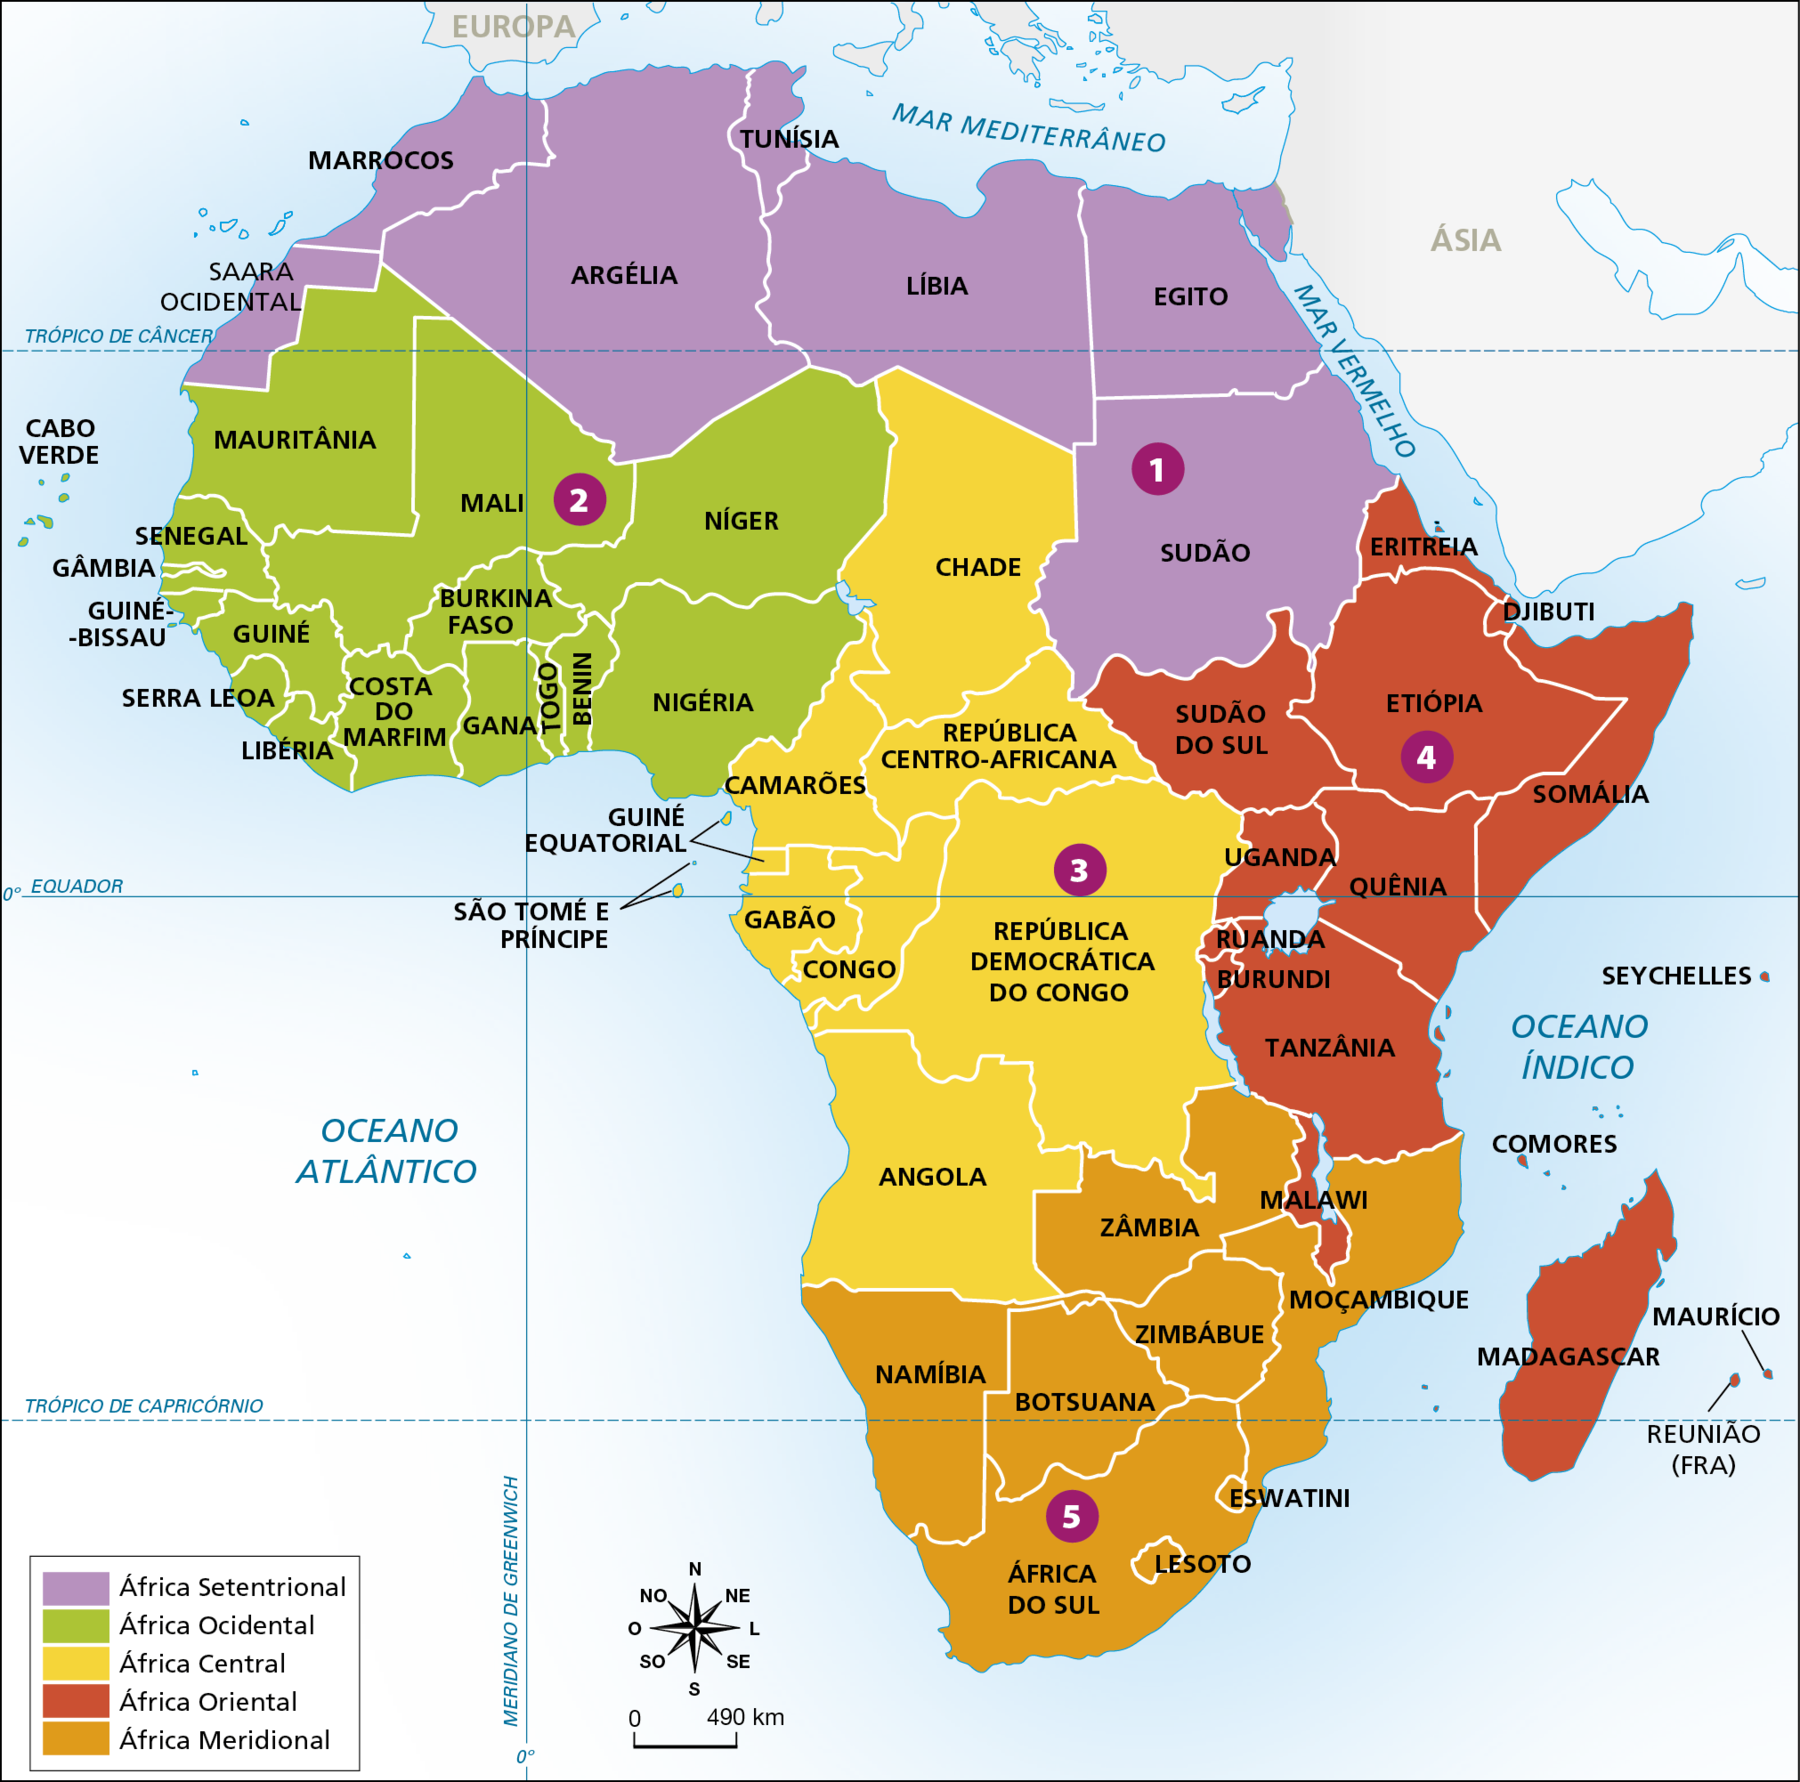 Mapa. África: regionalização segundo a ONU Mapa temático da regionalização dos países do continente africano. Cada região está representada por uma cor diferente. África Setentrional: Saara Ocidental, Marrocos, Argélia, Tunísia, Líbia, Egito, Sudão. África Ocidental: Cabo Verde, Mauritânia, Senegal, Gâmbia, Guiné-Bissau, Guiné, Serra Leoa, Libéria, Costa do Marfim, Burkina Faso, Mali, Níger, Gana, Togo, Benin, Nigéria. África Central: Chade, Camarões, República Centro-Africana, Gabão, Guiné Equatorial, São Tomé e Príncipe, Gabão, Congo, República Democrática do Congo, Angola. África Oriental: Eritreia, Sudão do Sul, Uganda, Etiópia, Djibuti, Somália, Quênia, Ruanda, Burundi, Tanzânia, Malawi, Madagascar, Seychelles, Maurício, Reunião (França). África Meridional: Moçambique, Zâmbia, Zimbábue, Eswatini, Lesoto, África do Sul, Botsuana, Namíbia. Na parte inferior esquerda, rosa dos ventos e escala de 0 a 490 quilômetros.